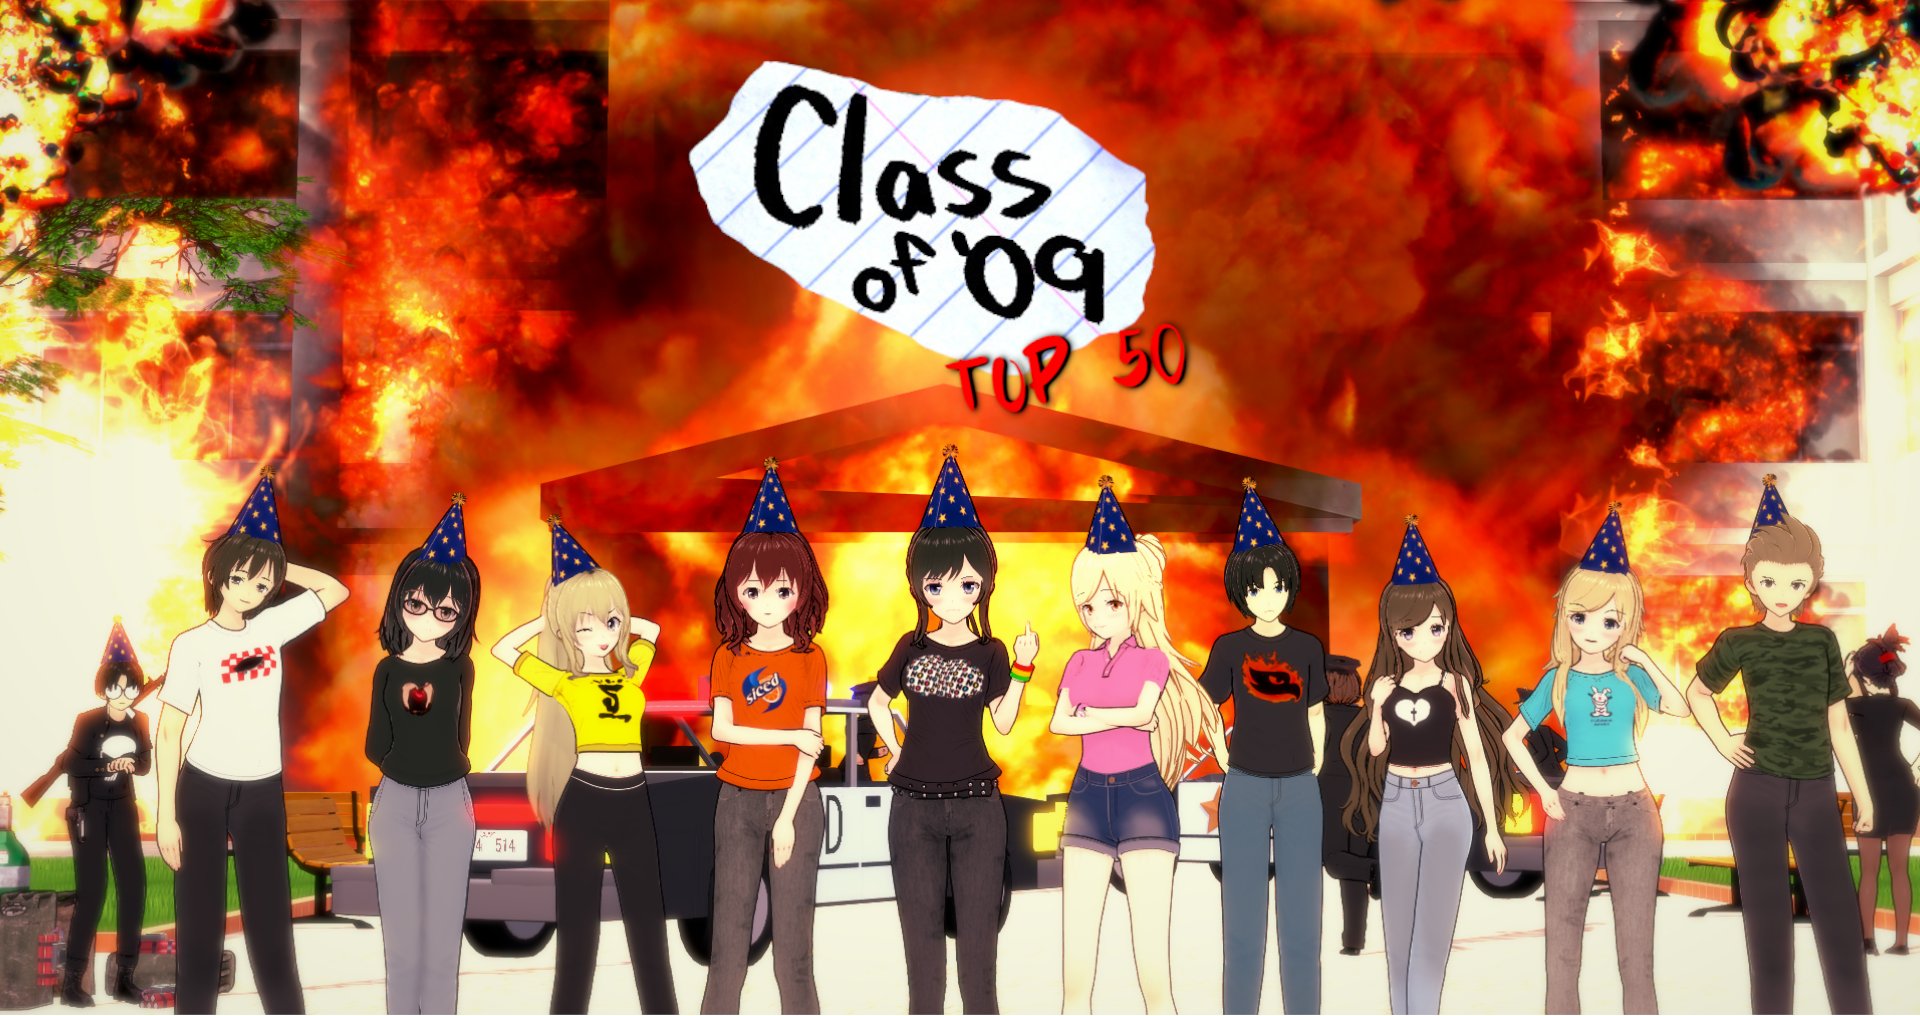 Class of '09: Anime Episode by SBN3 — Kickstarter